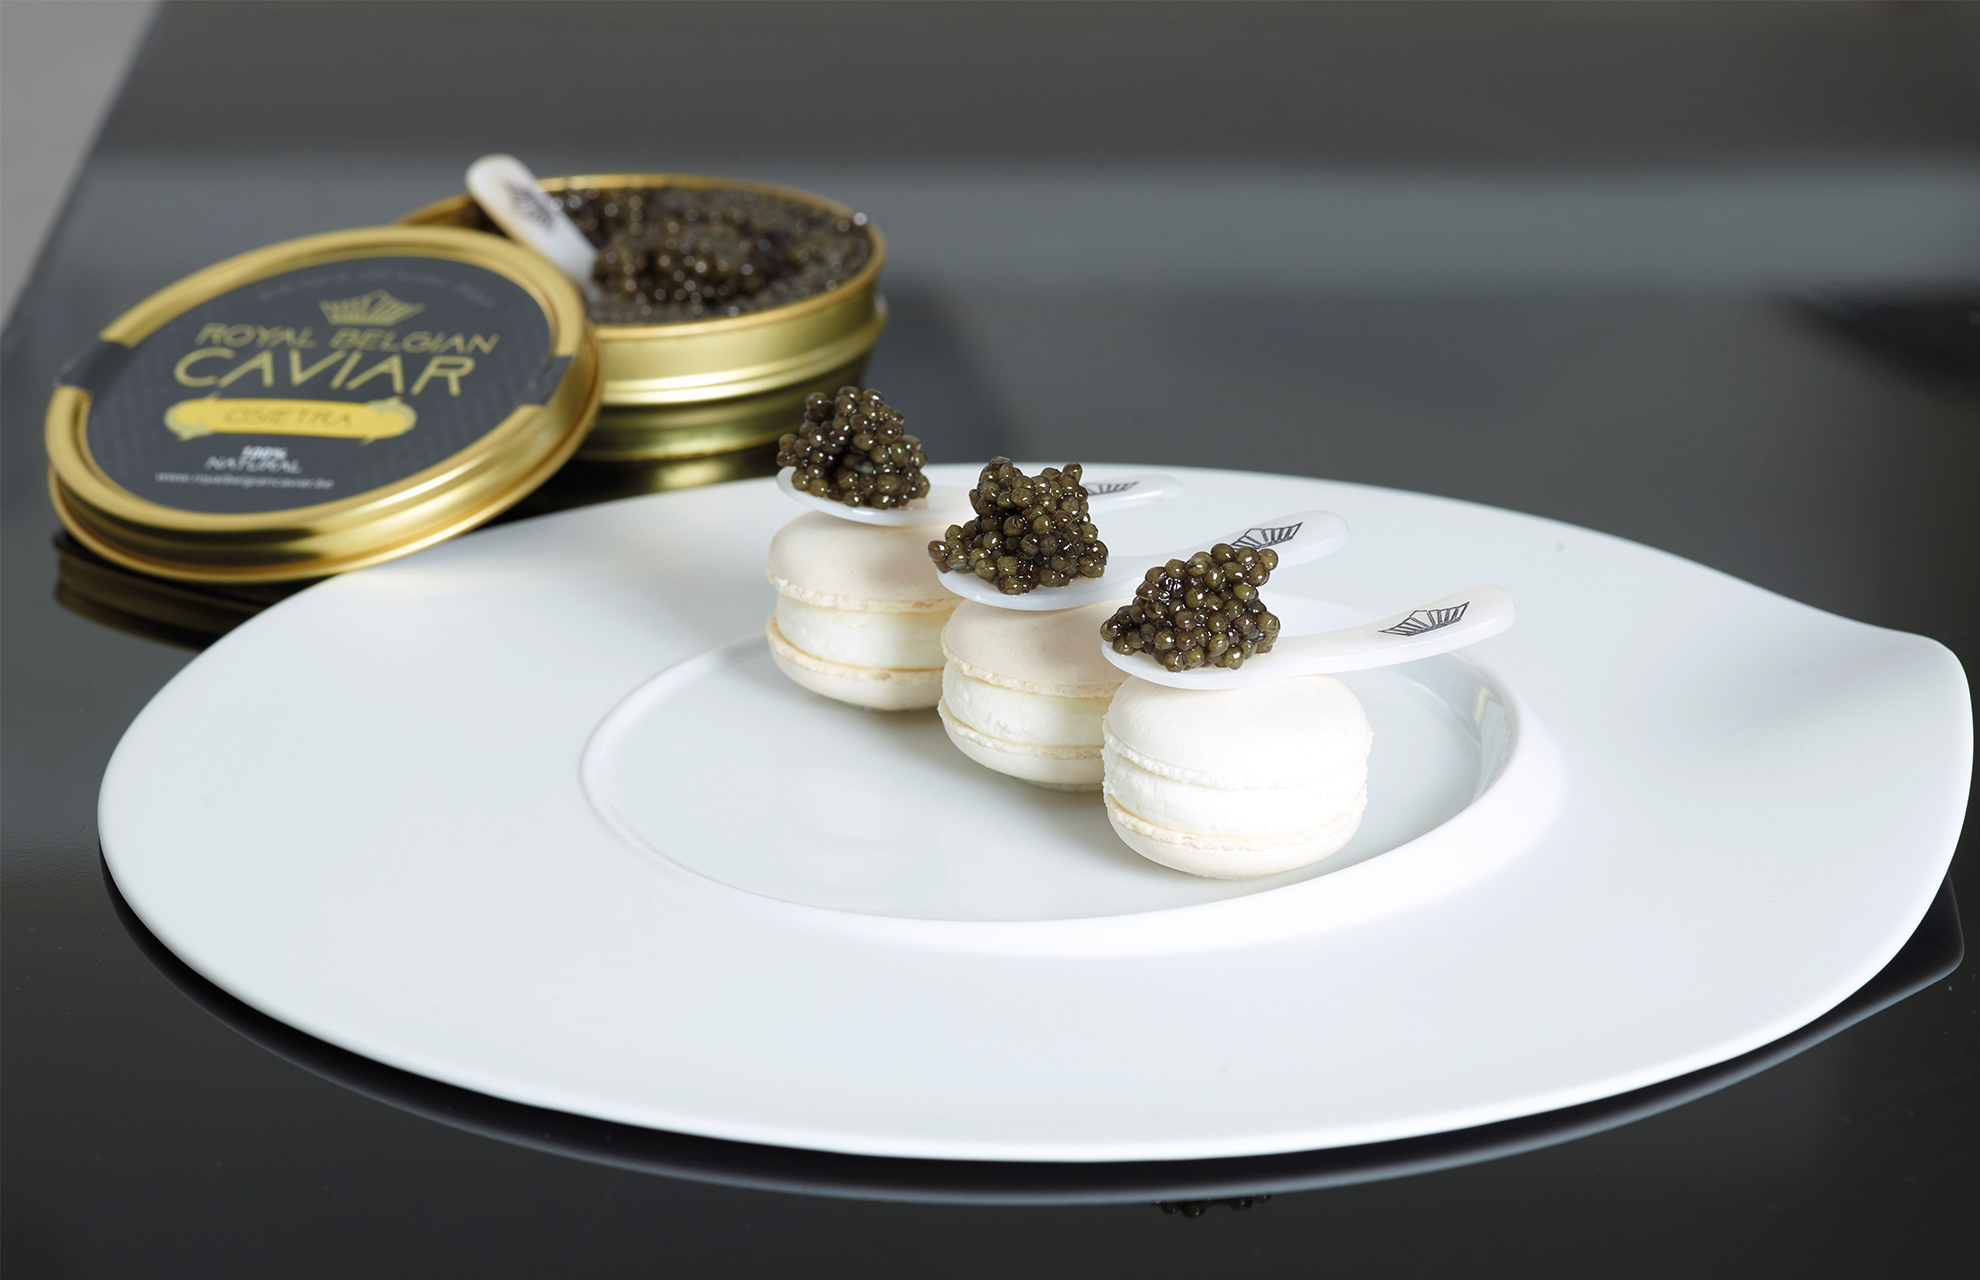 Royal Belgian Caviar 2